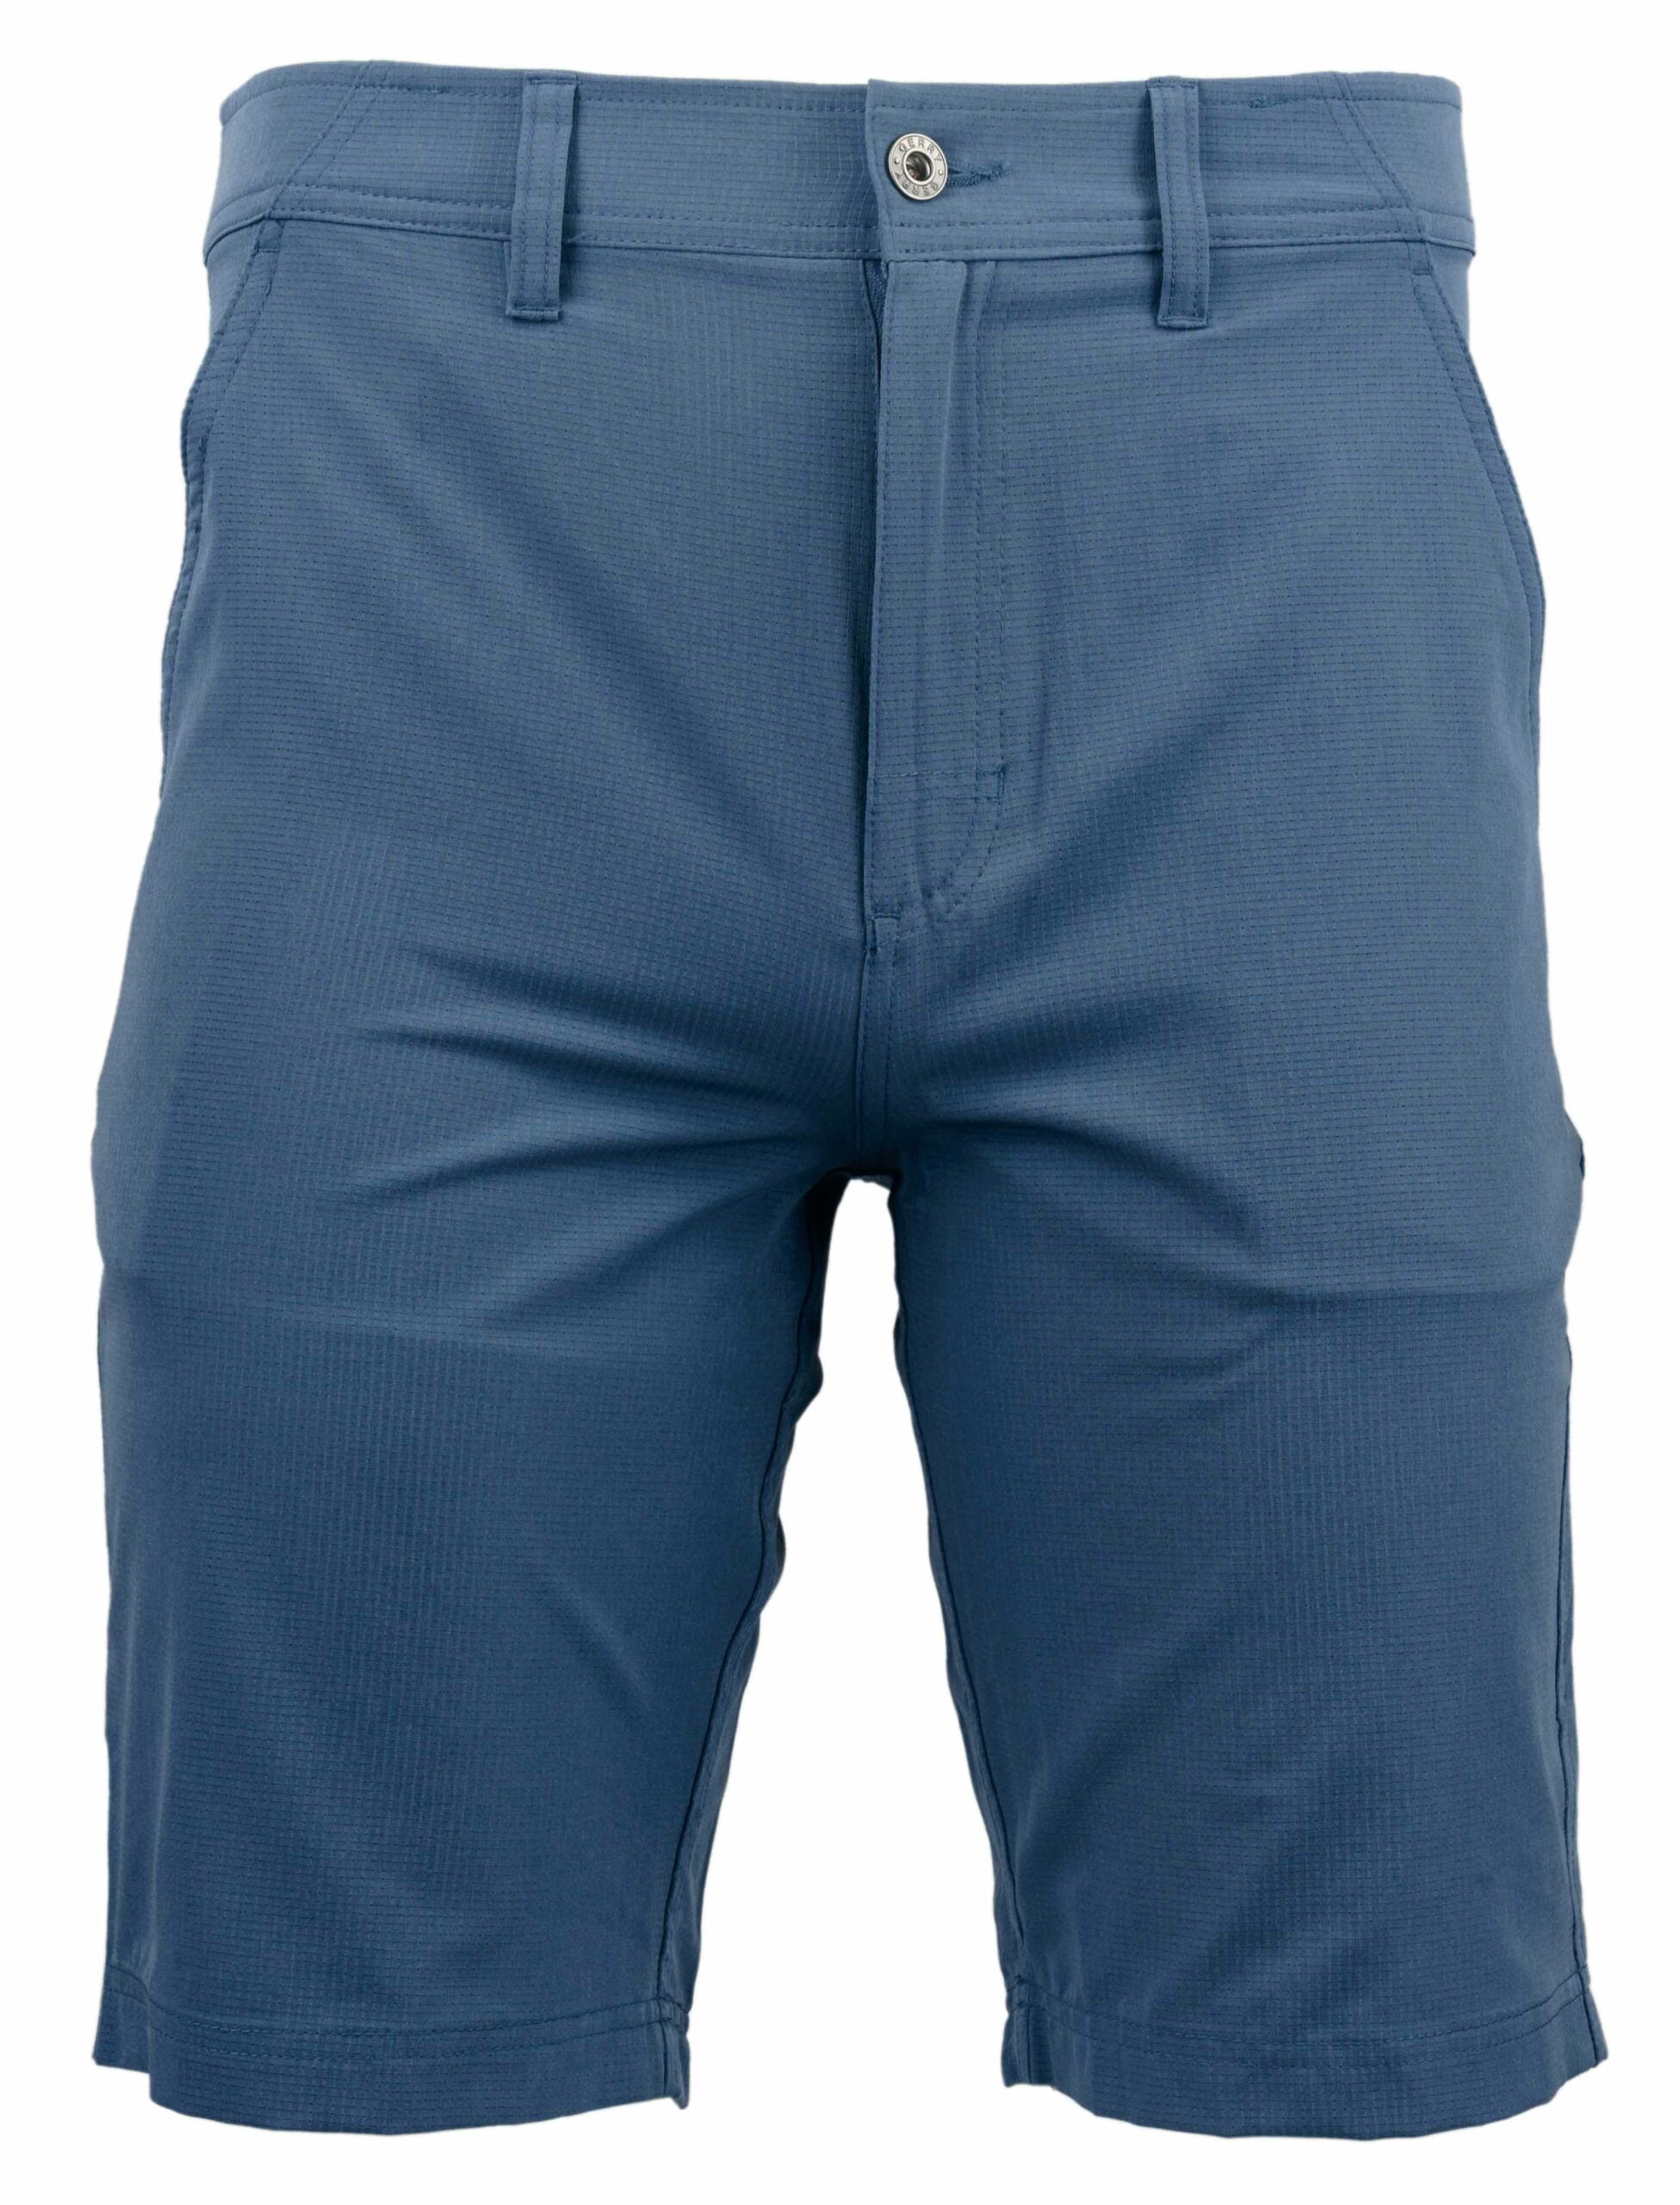 Gerry Men's Textured Shorts (Shade Blue, 32) - Walmart.com